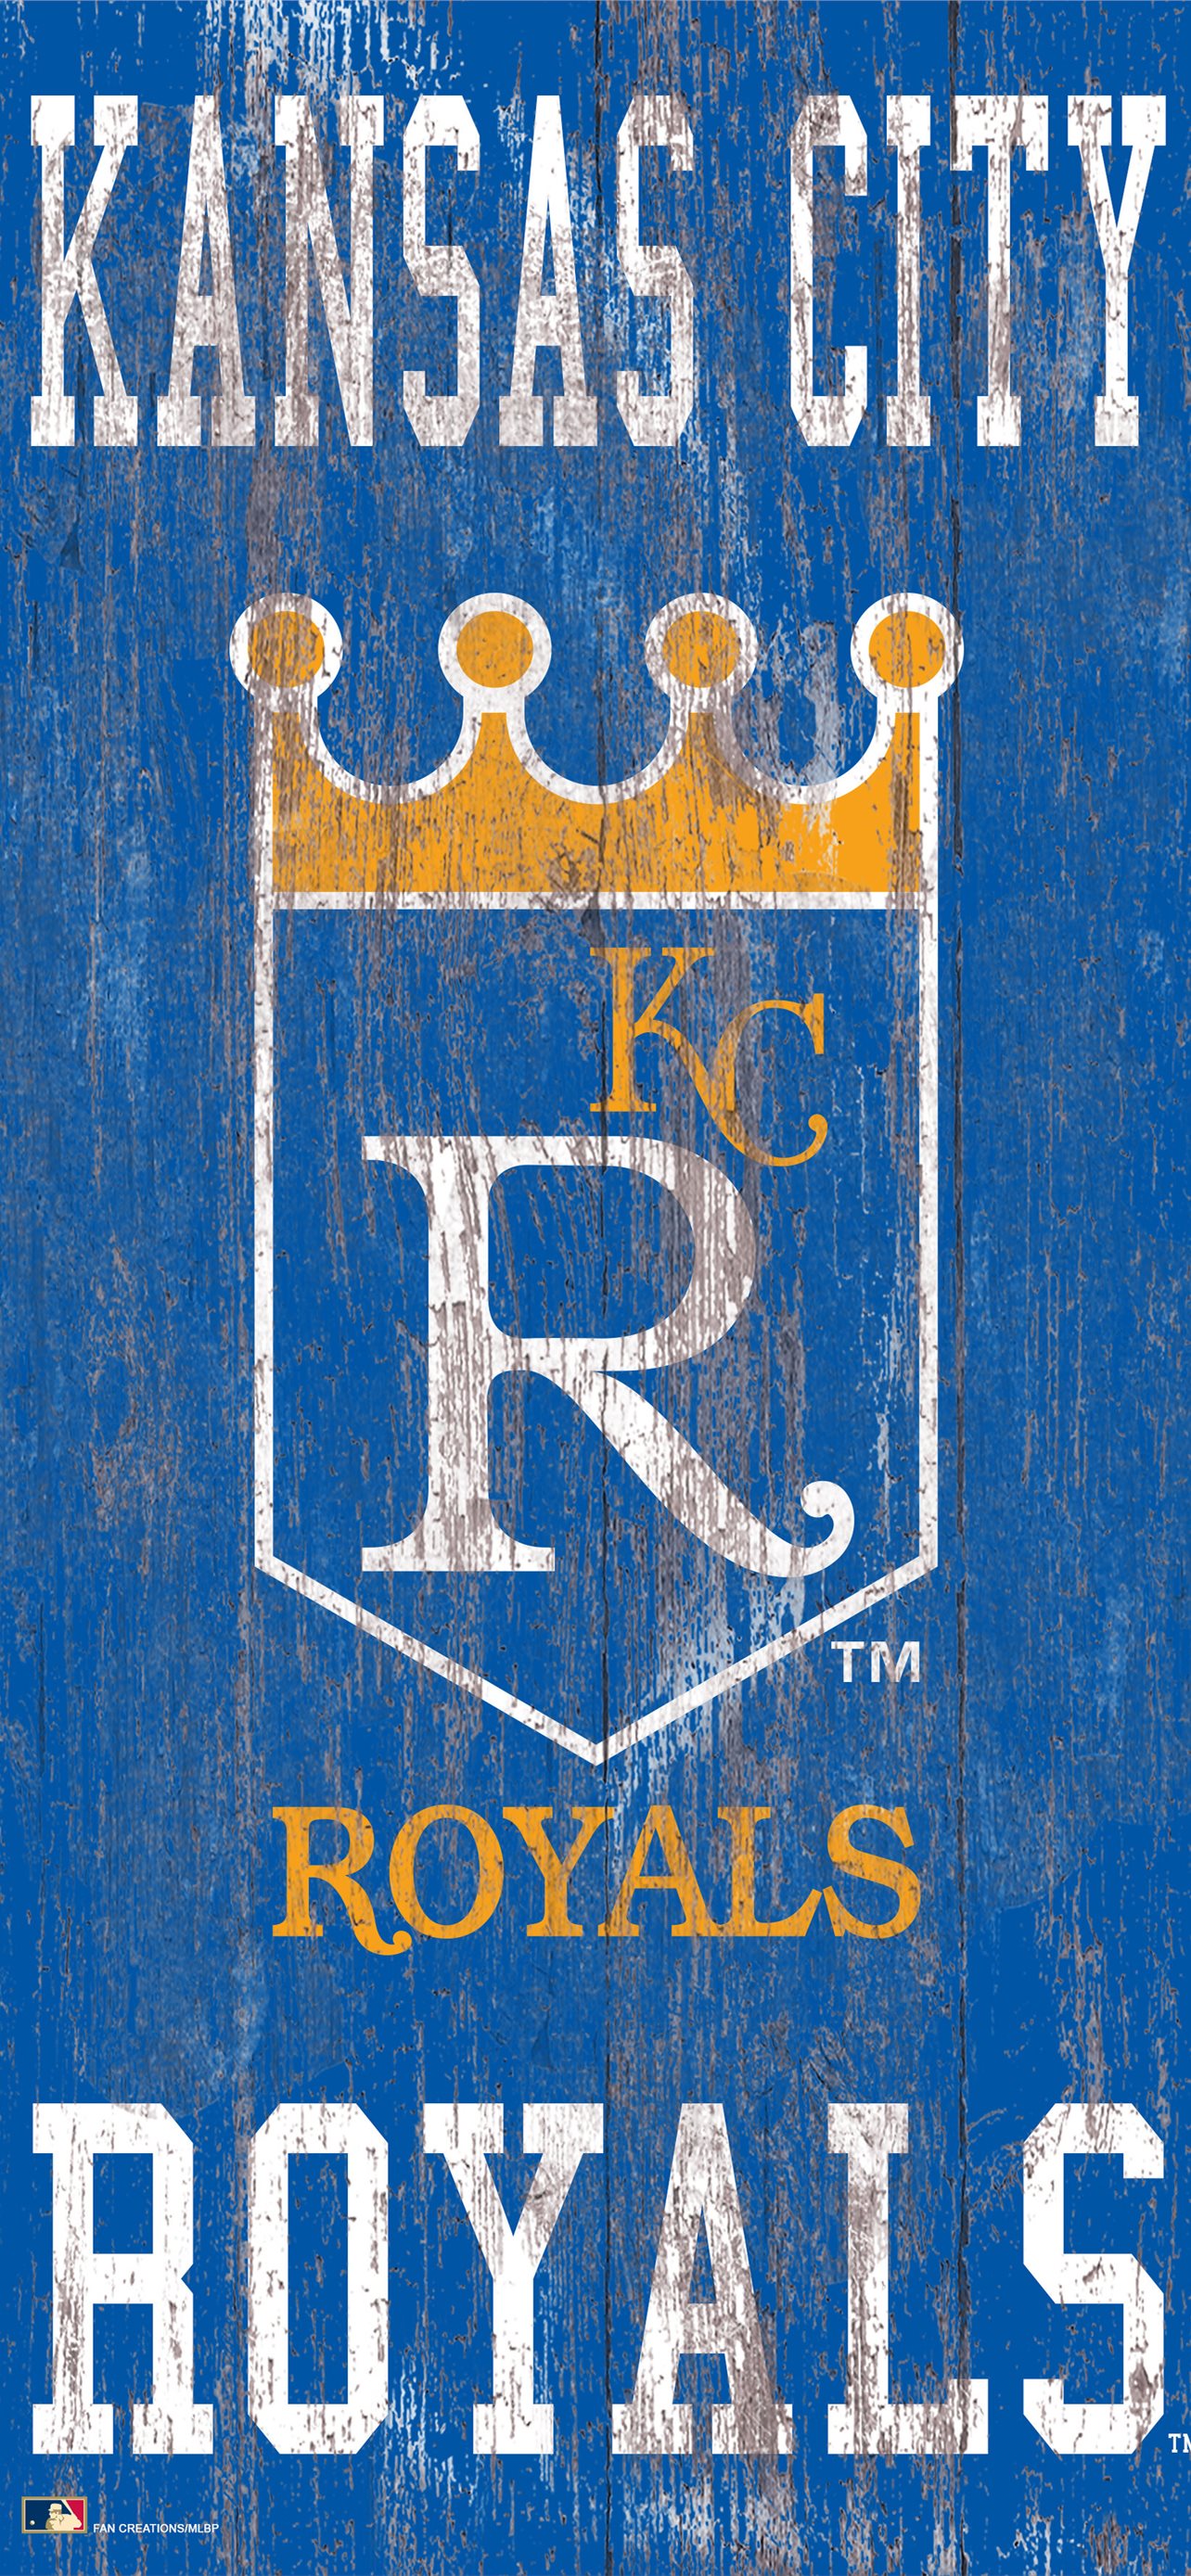 kc royals wallpaper